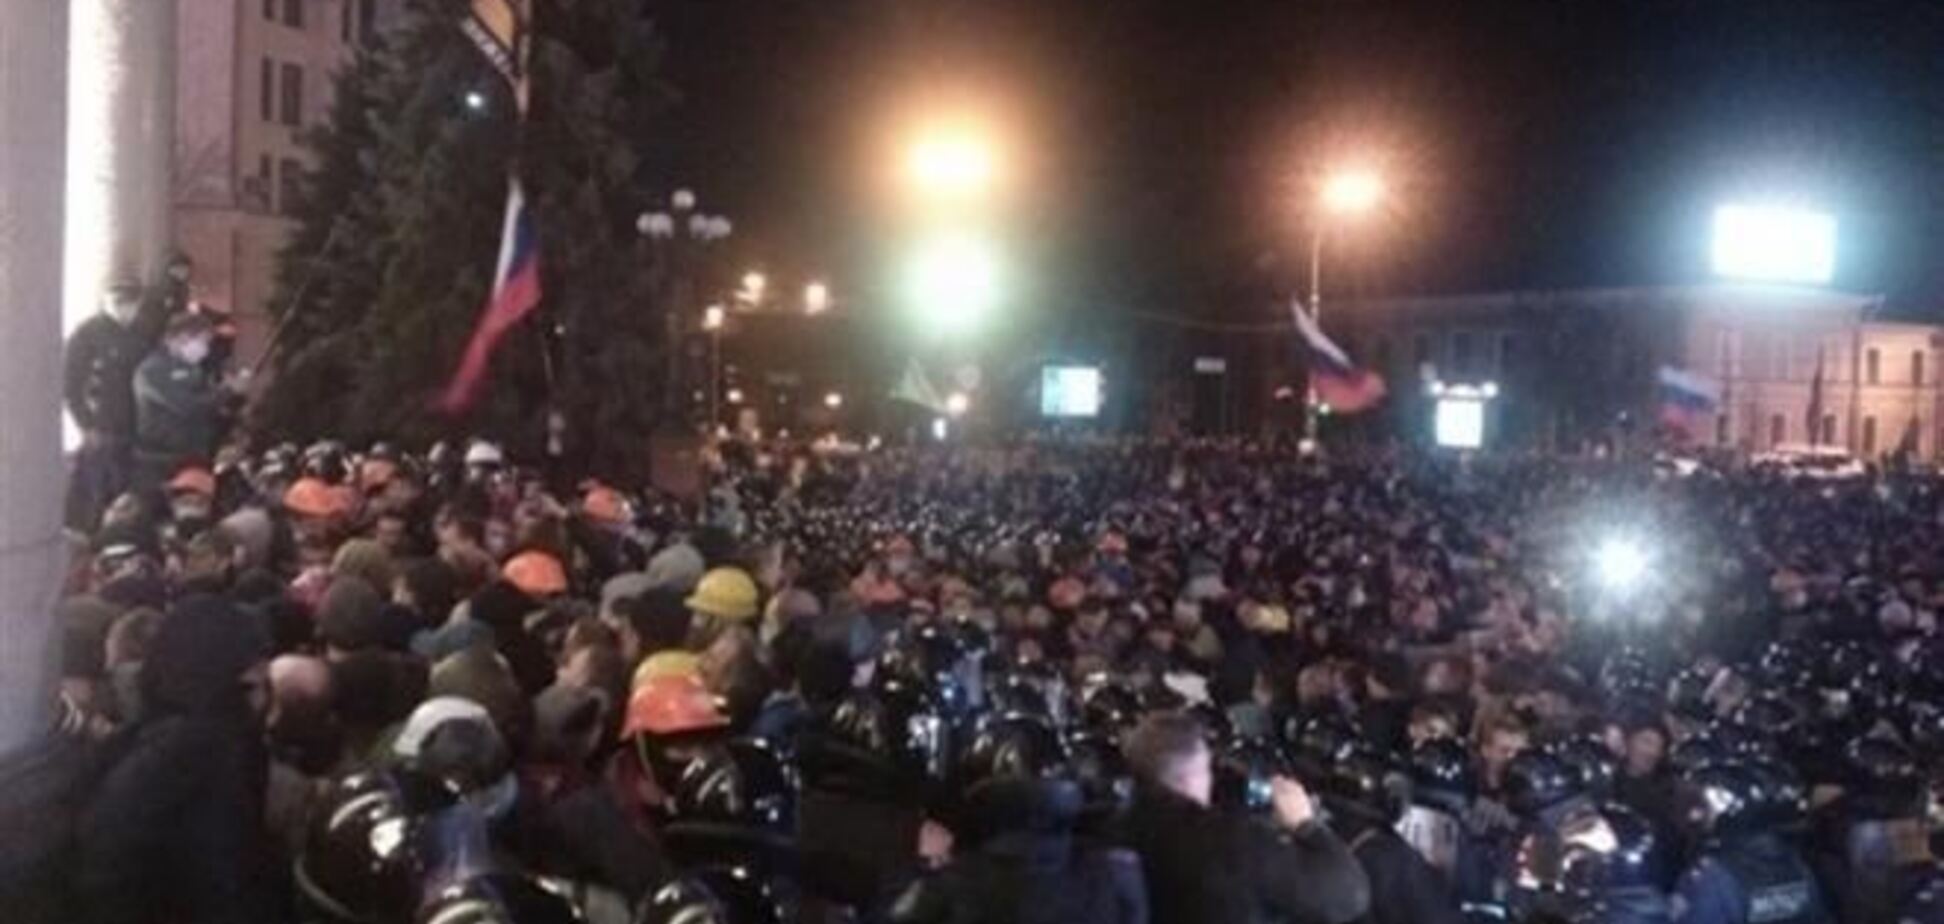 Аваков рассказал подробности освобождения ОГА в Харькове: по милиционерам был открыт огонь